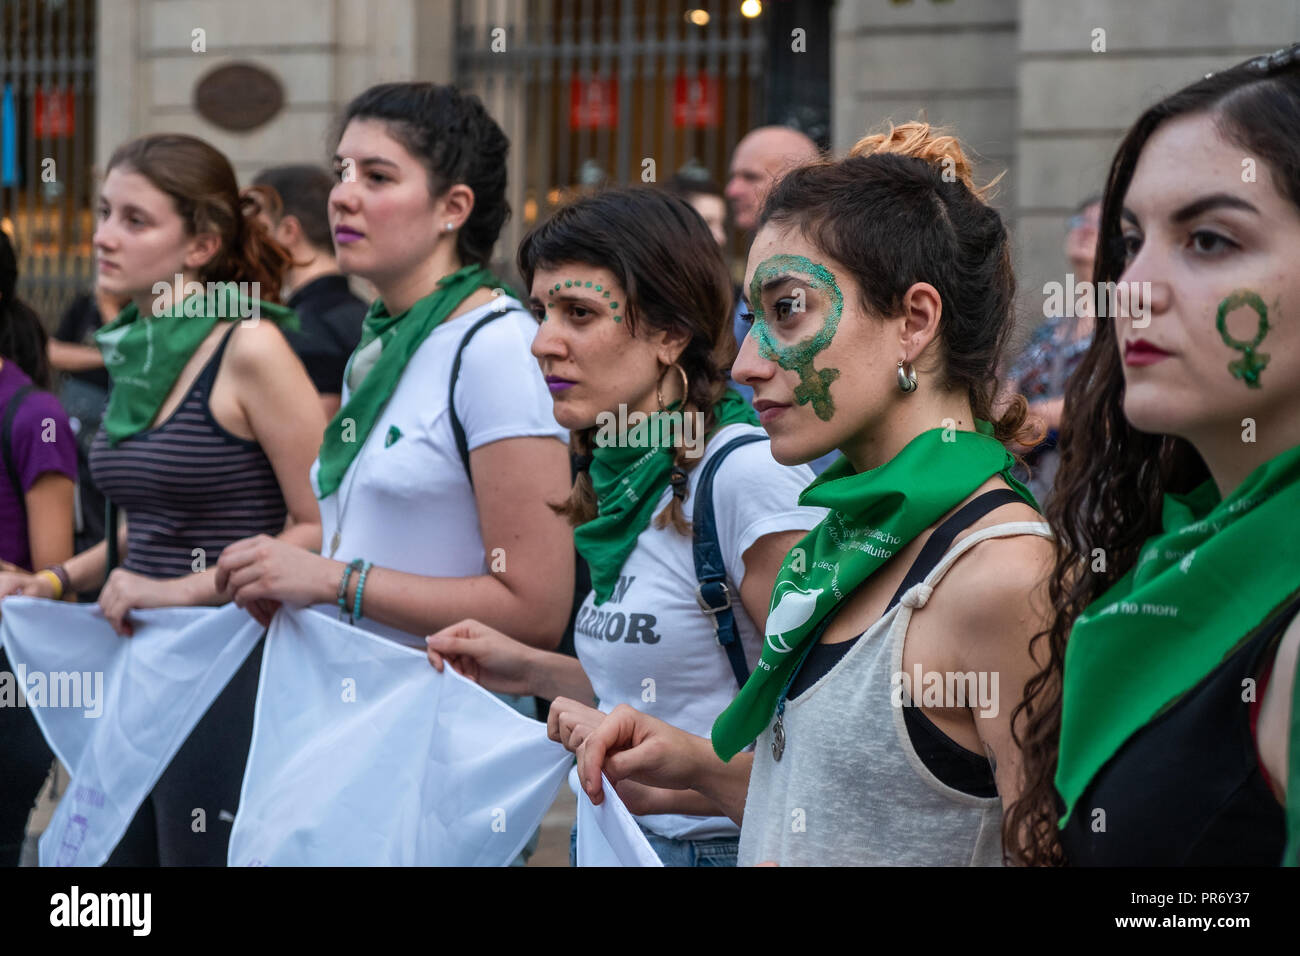 Un grupo de mujeres se considera explotación permanente pañuelos verde durante una protesta para marcar el Día Mundial de Acción para el aborto legal y seguro. Más de un centenar de mujeres reclamaron su derecho a una libre, el aborto legal y seguro. Foto de stock